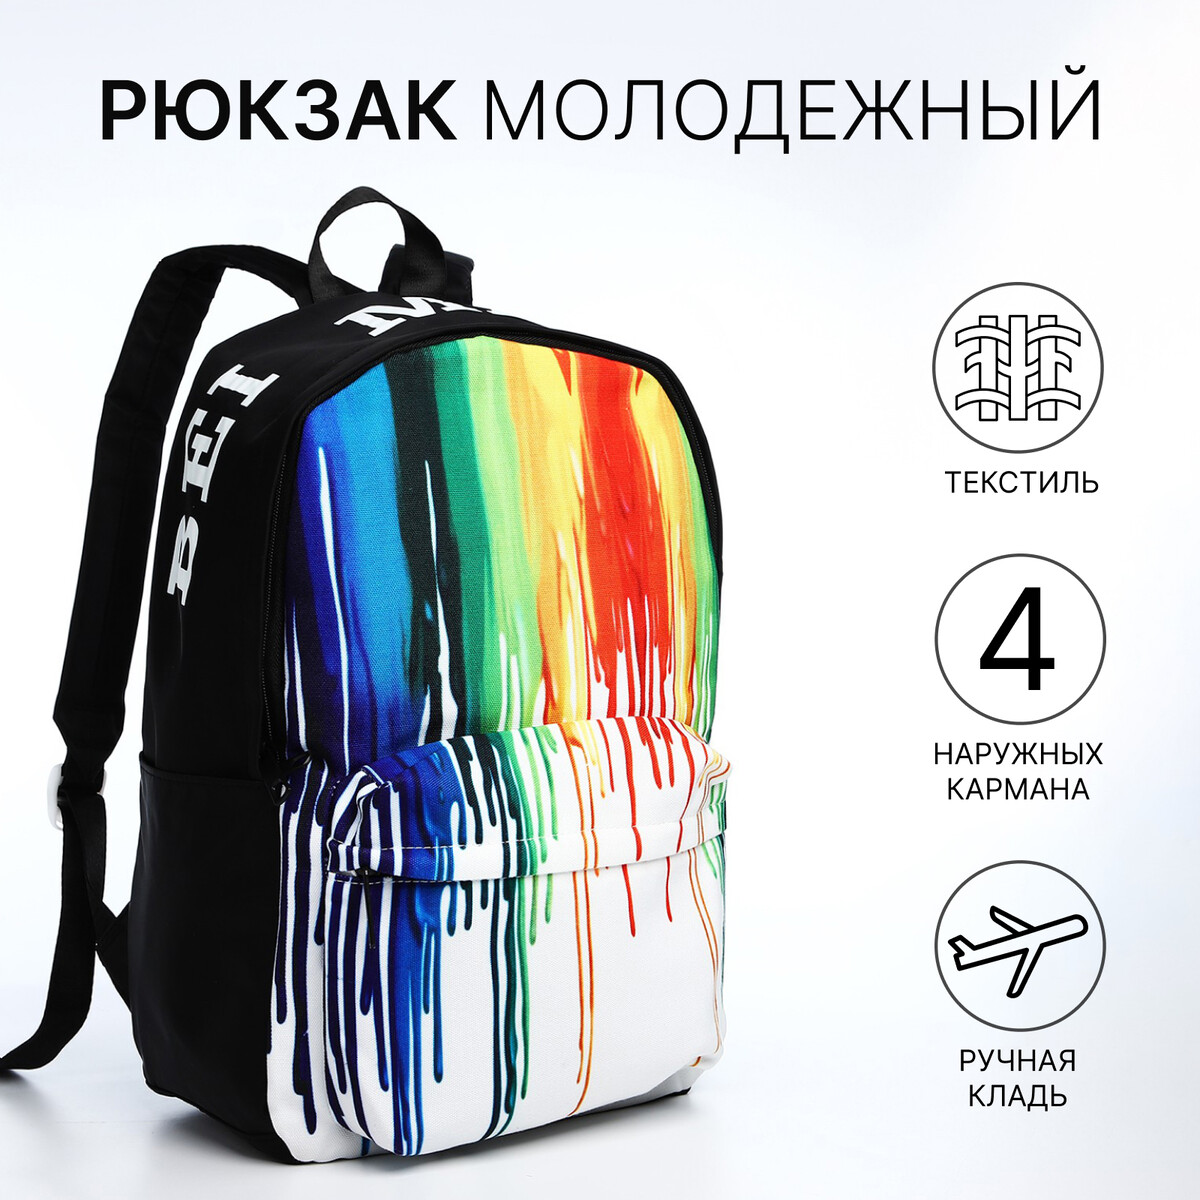 Рюкзак молодежный из текстиля, 4 кармана, цвет черный/разноцветный